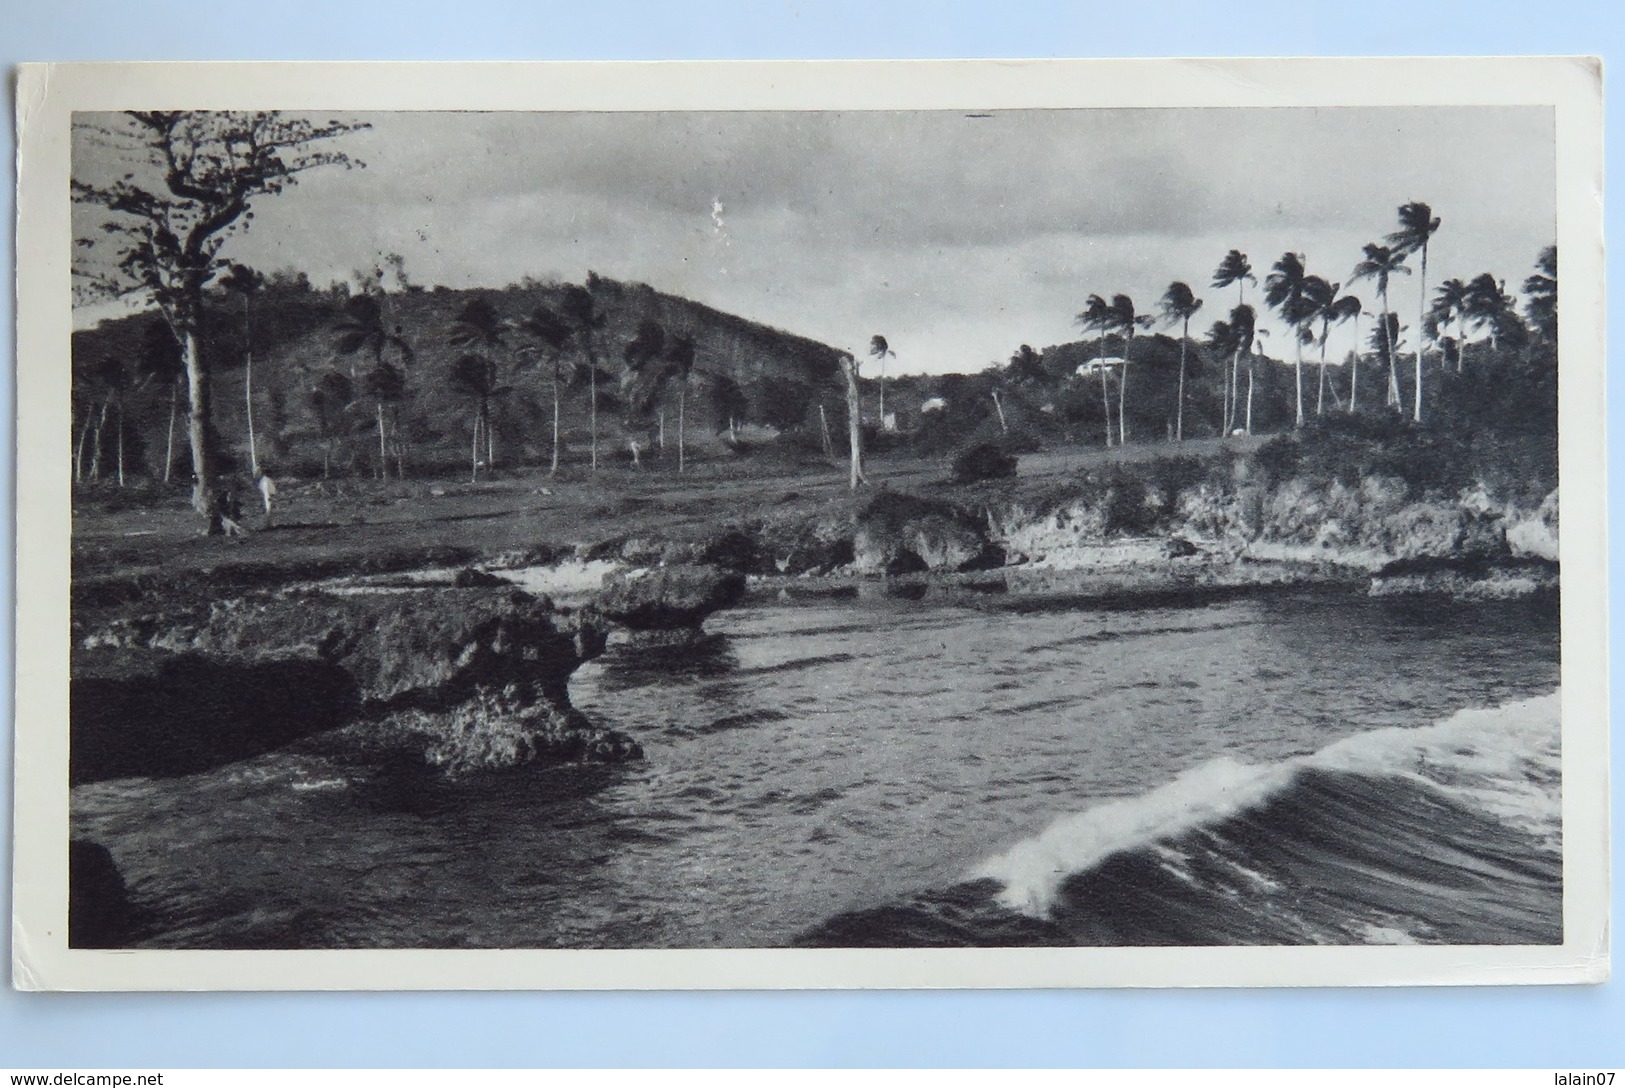 Carte Postale : TRINIDAD TOBAGO : Trinité, Bord De Mer, 2 Timbres En 1952, édité Par Plasmarine - Trinidad